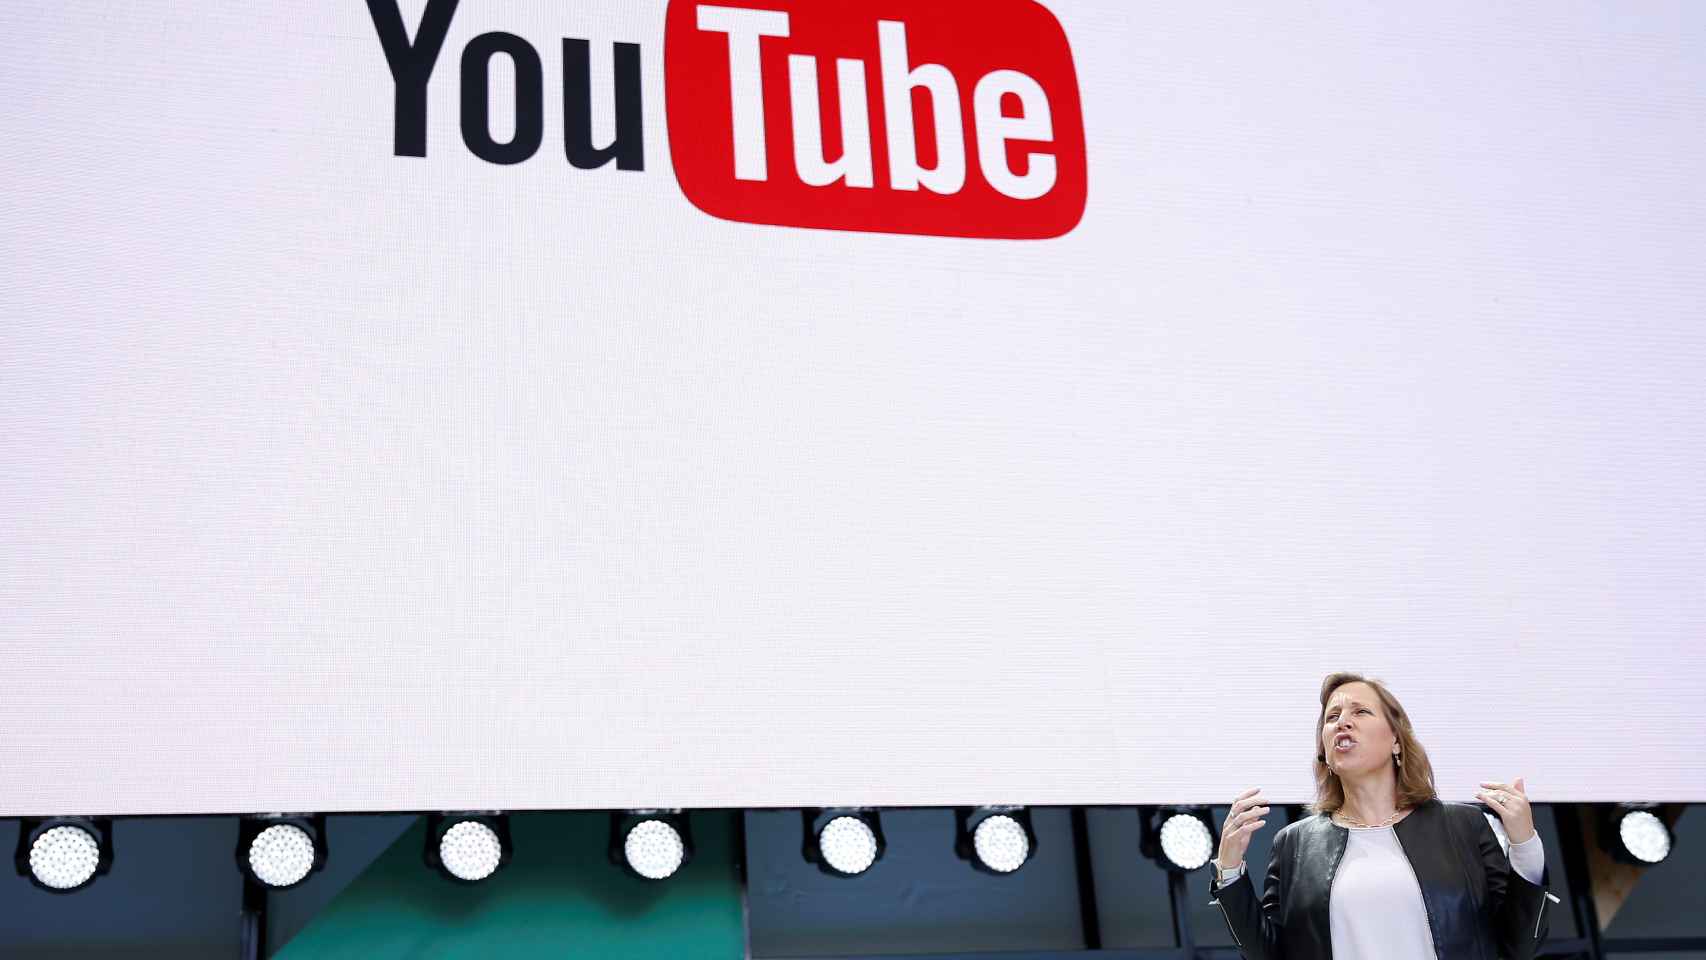 La consejera delegada de YouTube, Susan Wojcicki